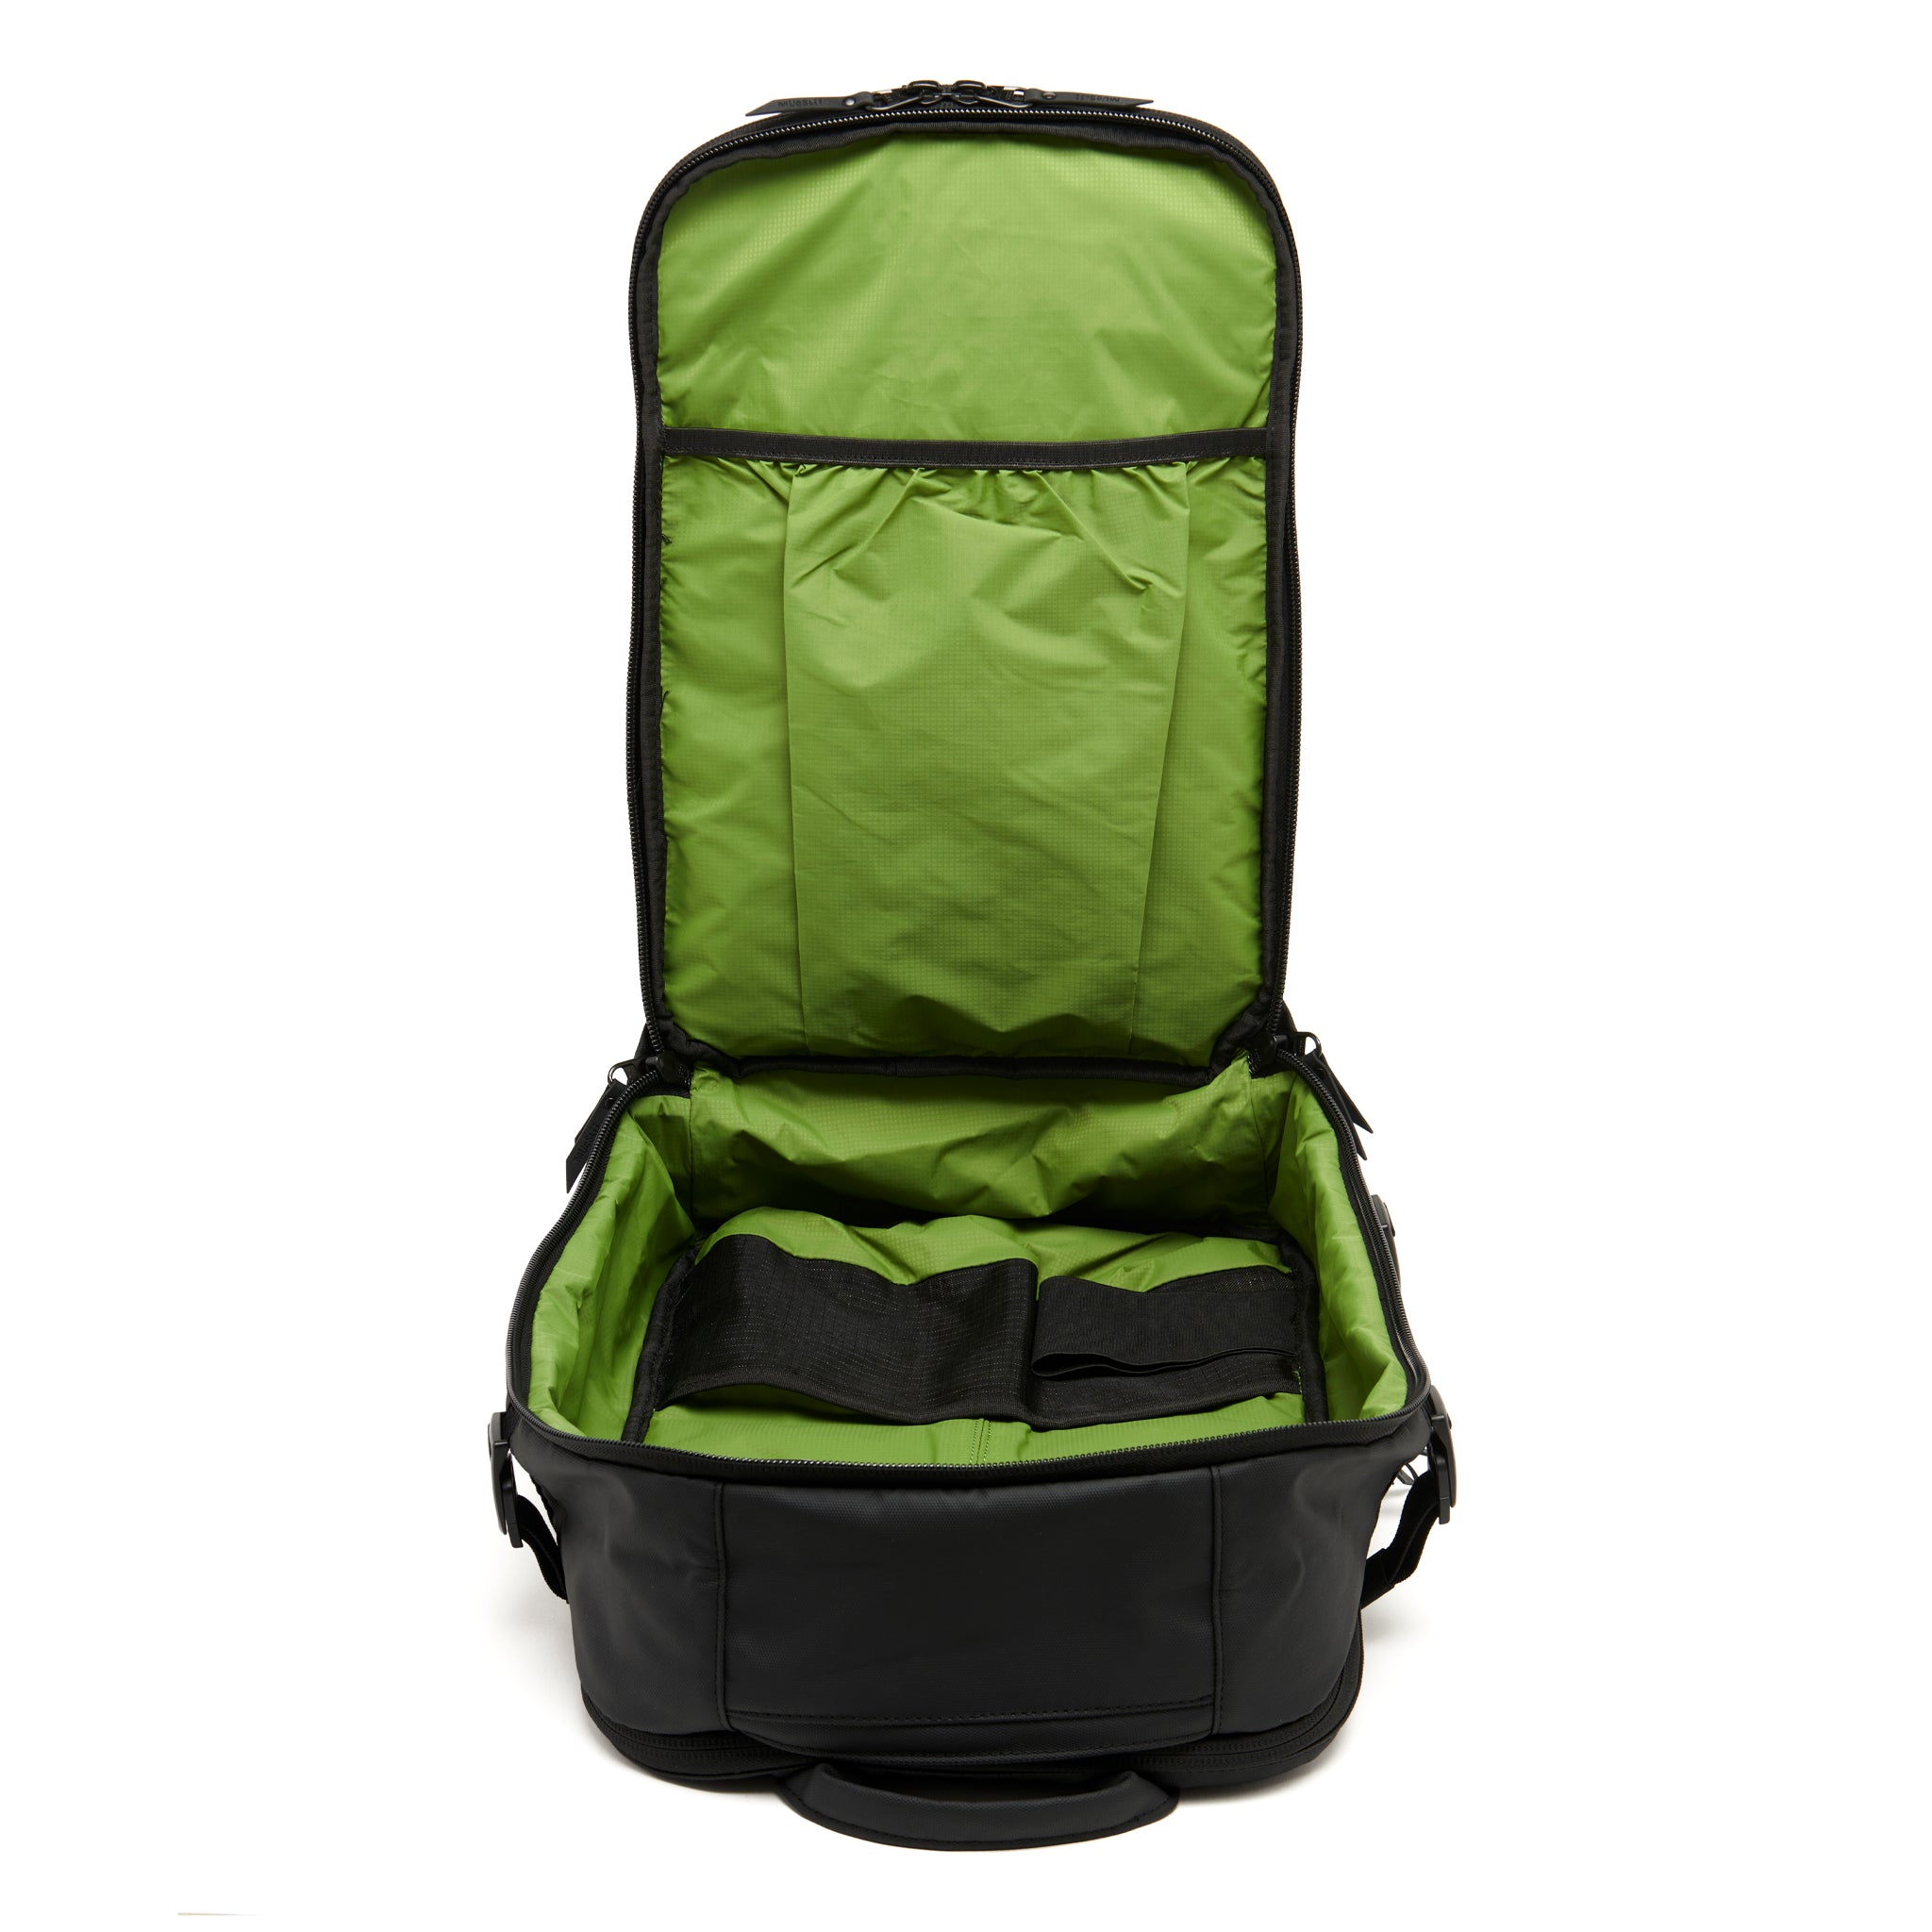 Mueslii travel backpack, made of PU coated waterproof nylon, color black, capacity 30 liters.